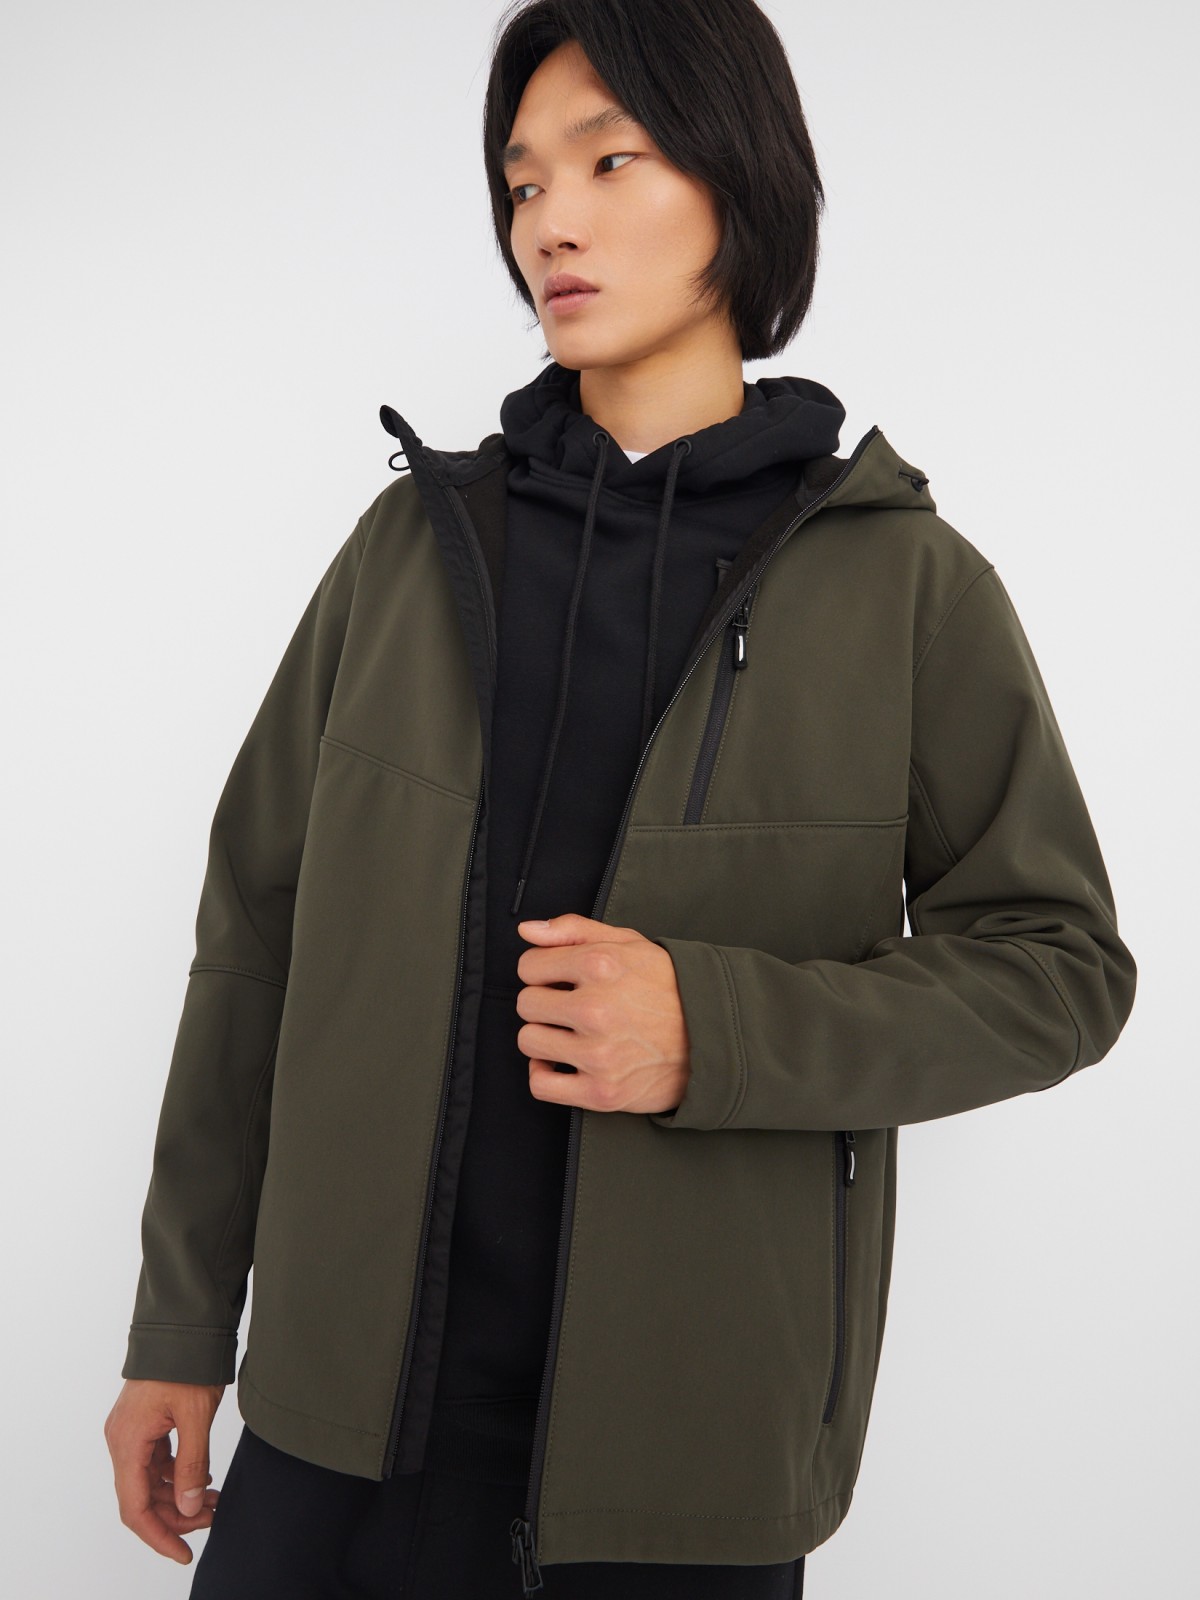 Лёгкая куртка-ветровка без утеплителя с капюшоном zolla 013325602014, цвет хаки, размер XXL